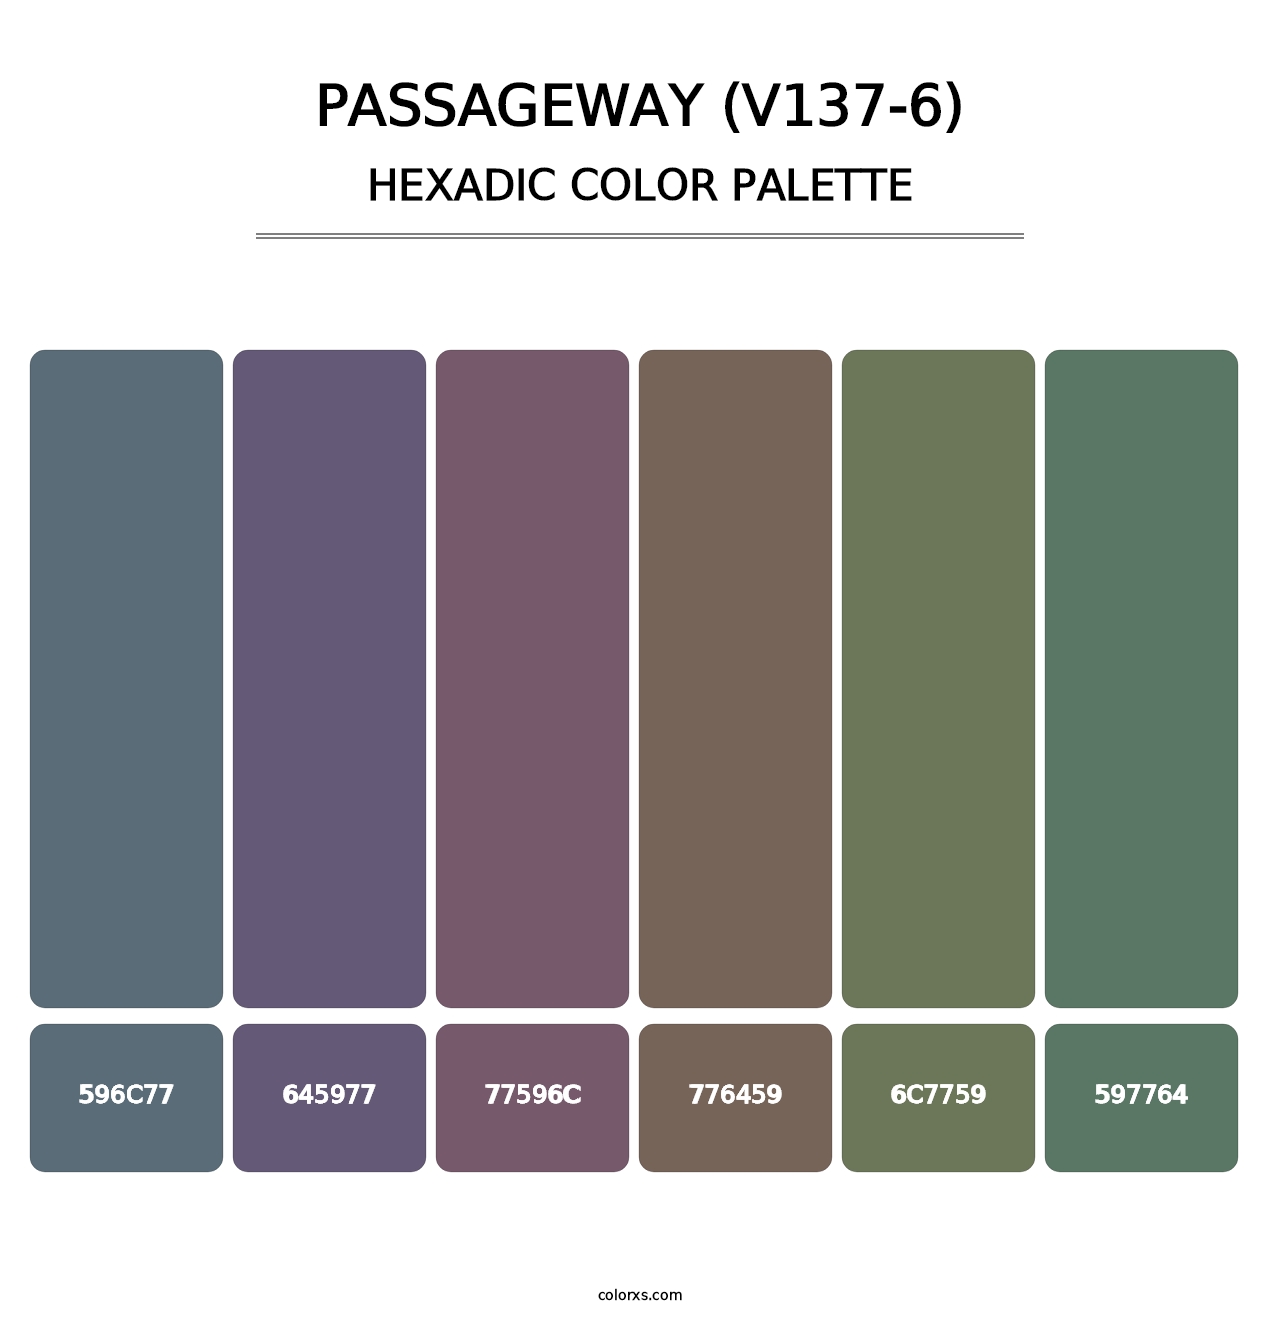 Passageway (V137-6) - Hexadic Color Palette